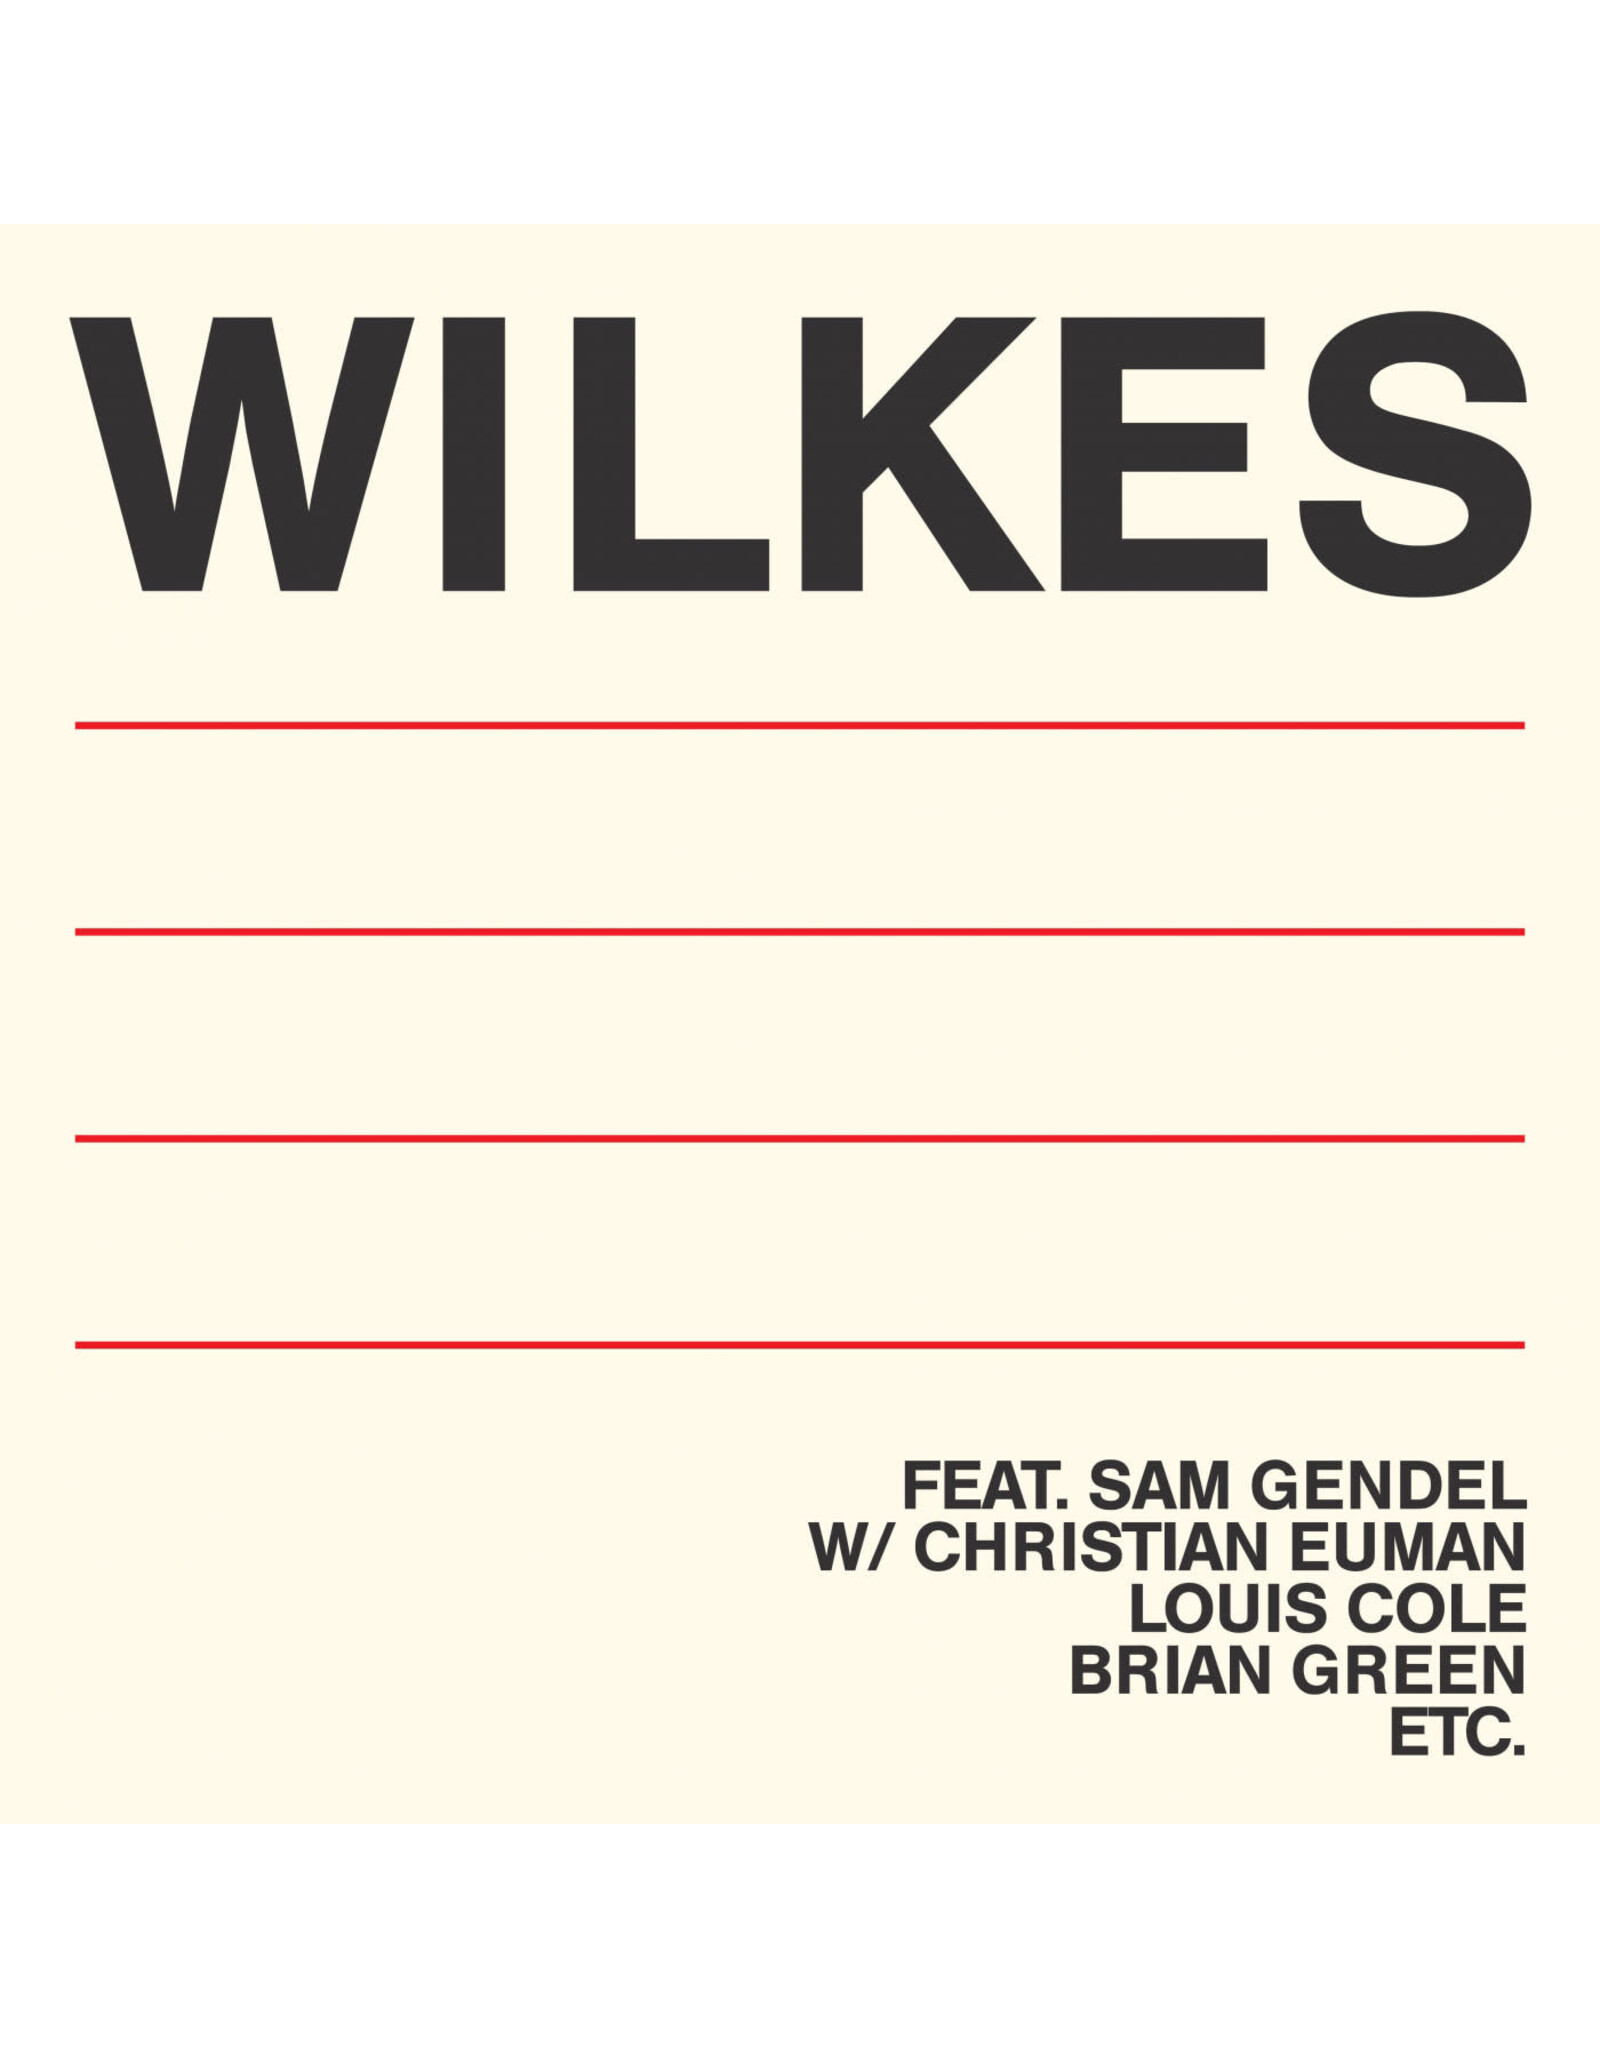 Leaving Wilkes, Sam: Wilkes LP